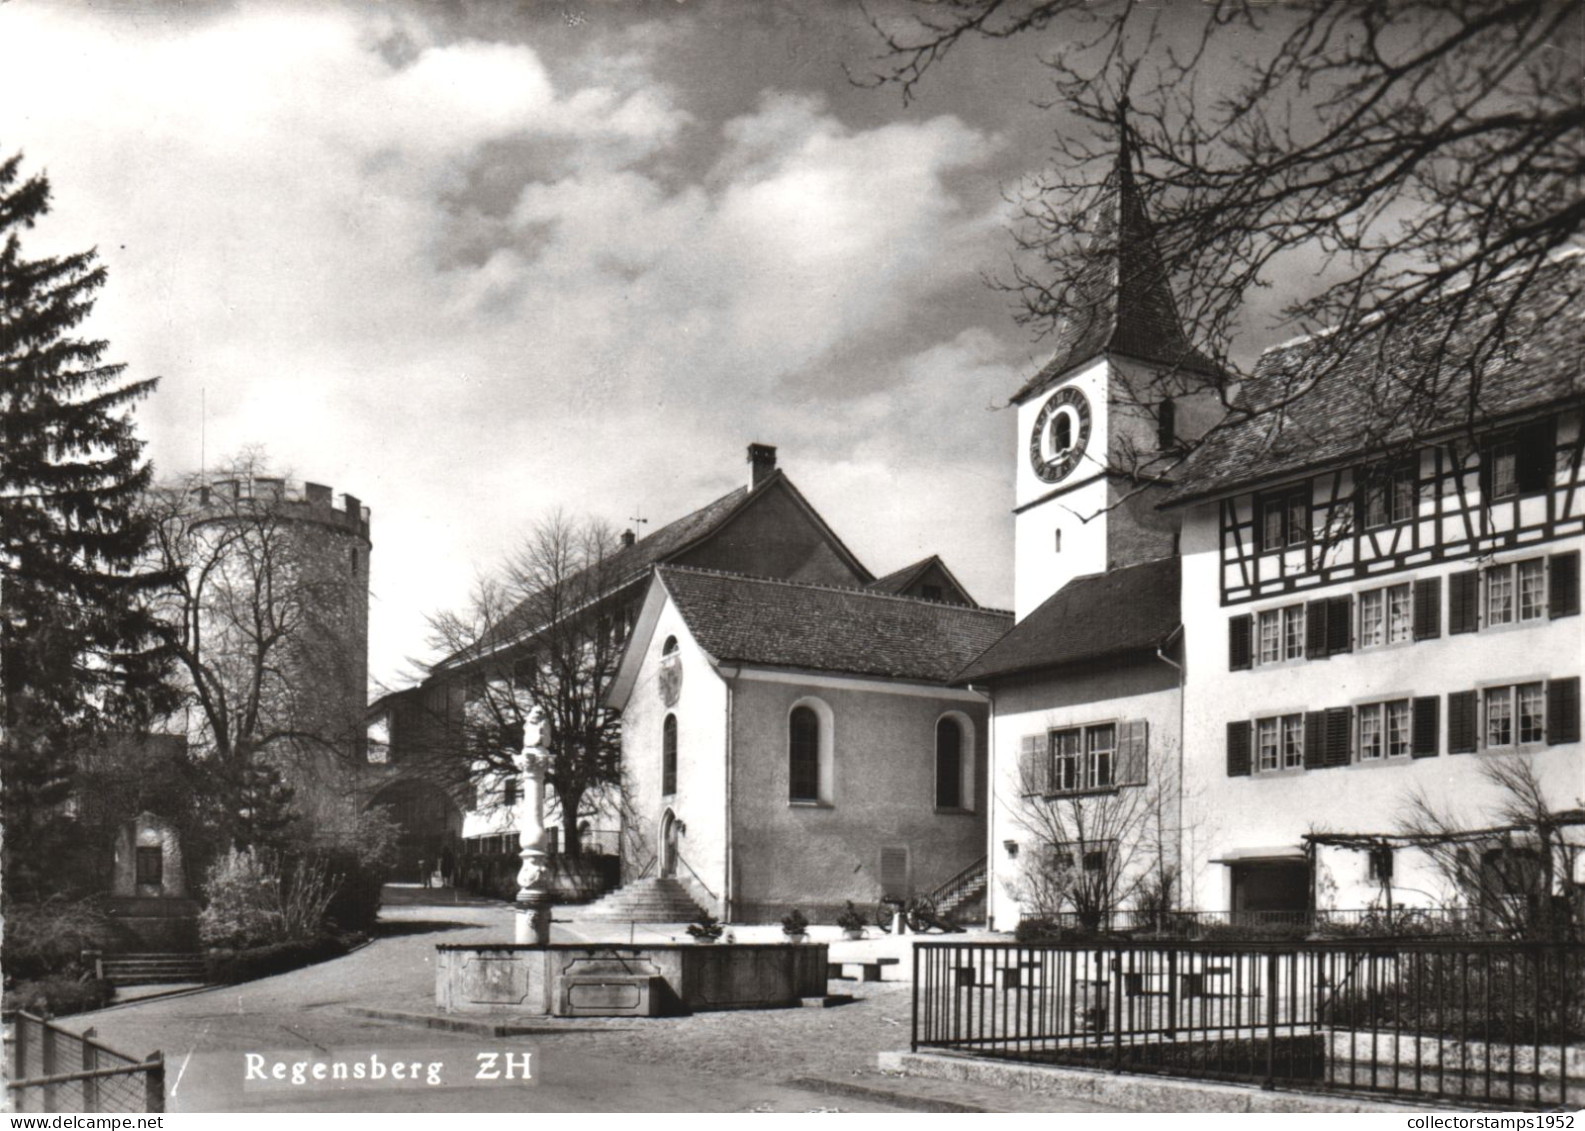 SWITZERLAND, ZURICH, REGENSBERG, COMMUNE, CHURCH, INN OF THE MEDIEVAL CASTLE TOWN FOR 500 YEARS - Regensberg